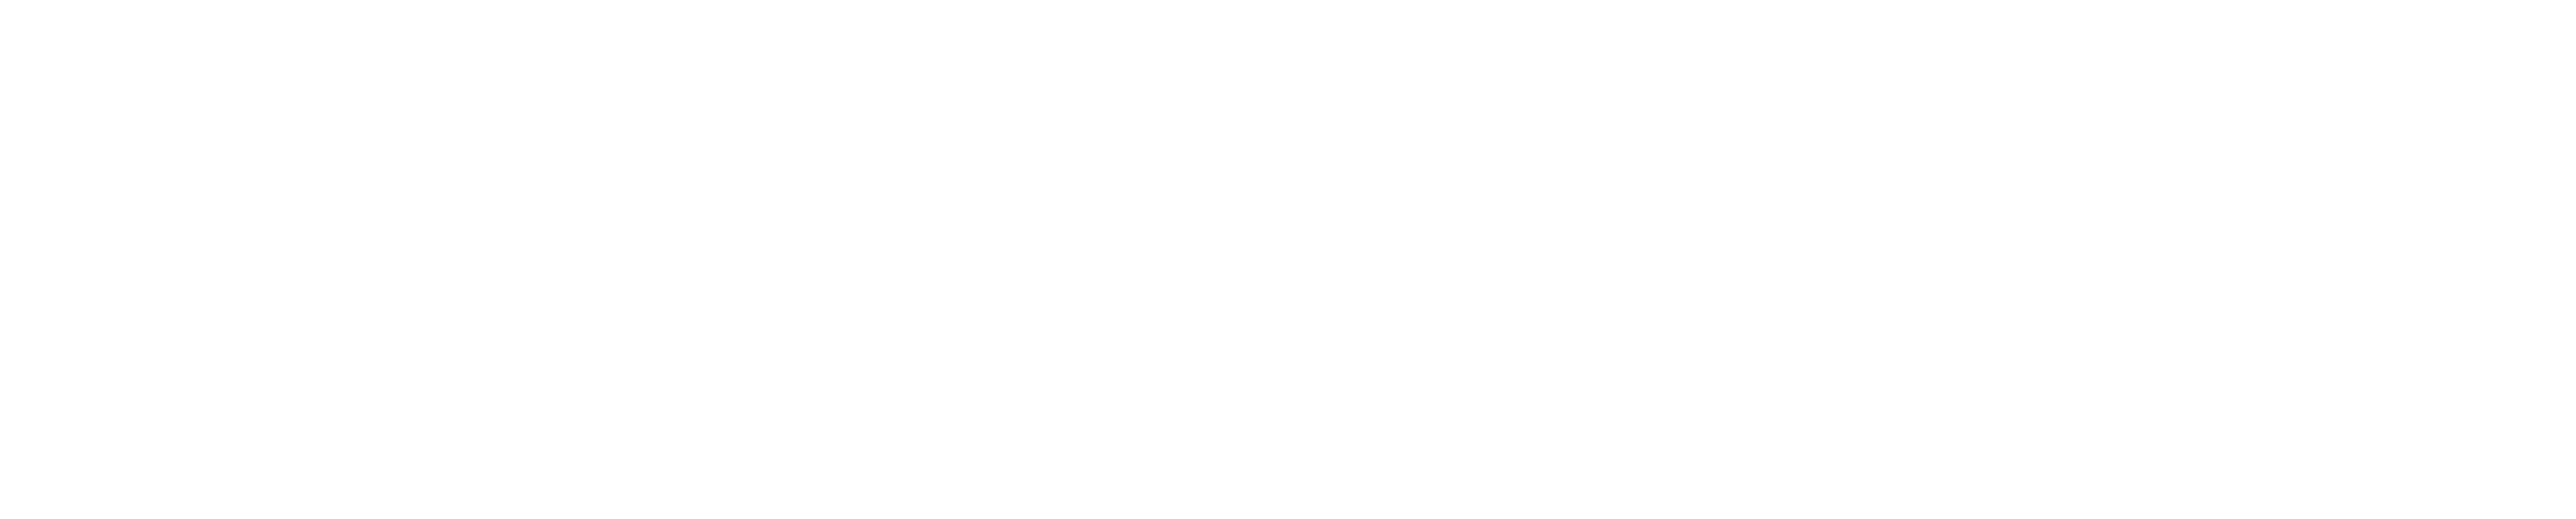 woocommerce ecommerce wesbite design